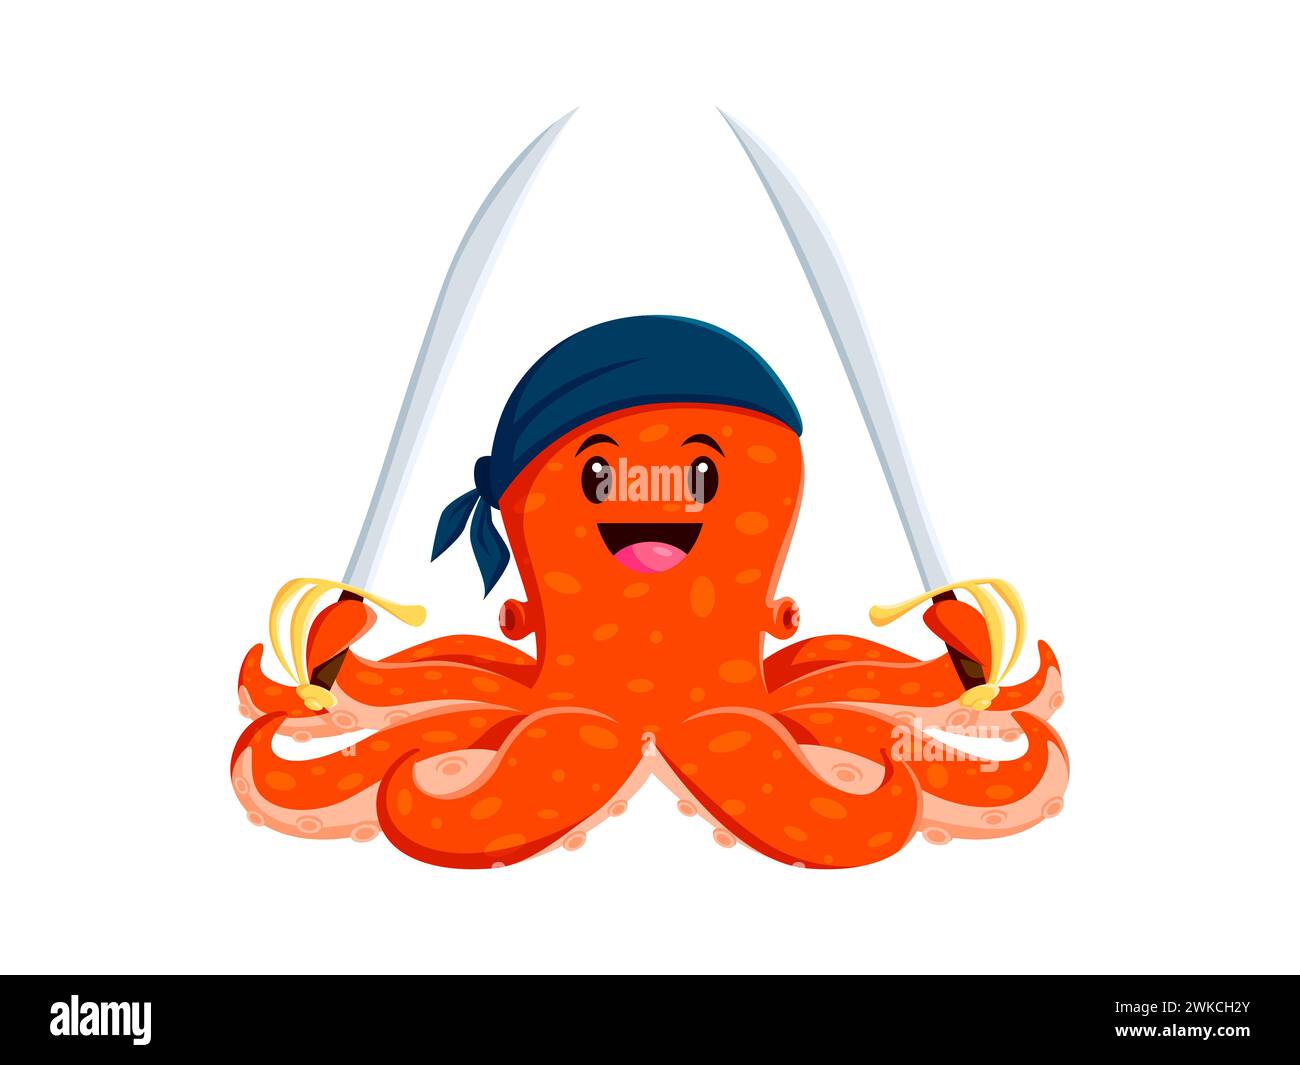 Zeichentrickfilm Piraten Kraken Tier Charakter. Die Korsair-Persönlichkeit der devilfish mit Säbeln in den Tentakeln trägt ein schelmisches Lächeln und ein Matrosenbandana, das für abenteuerliche Spiele bereit ist Stock Vektor